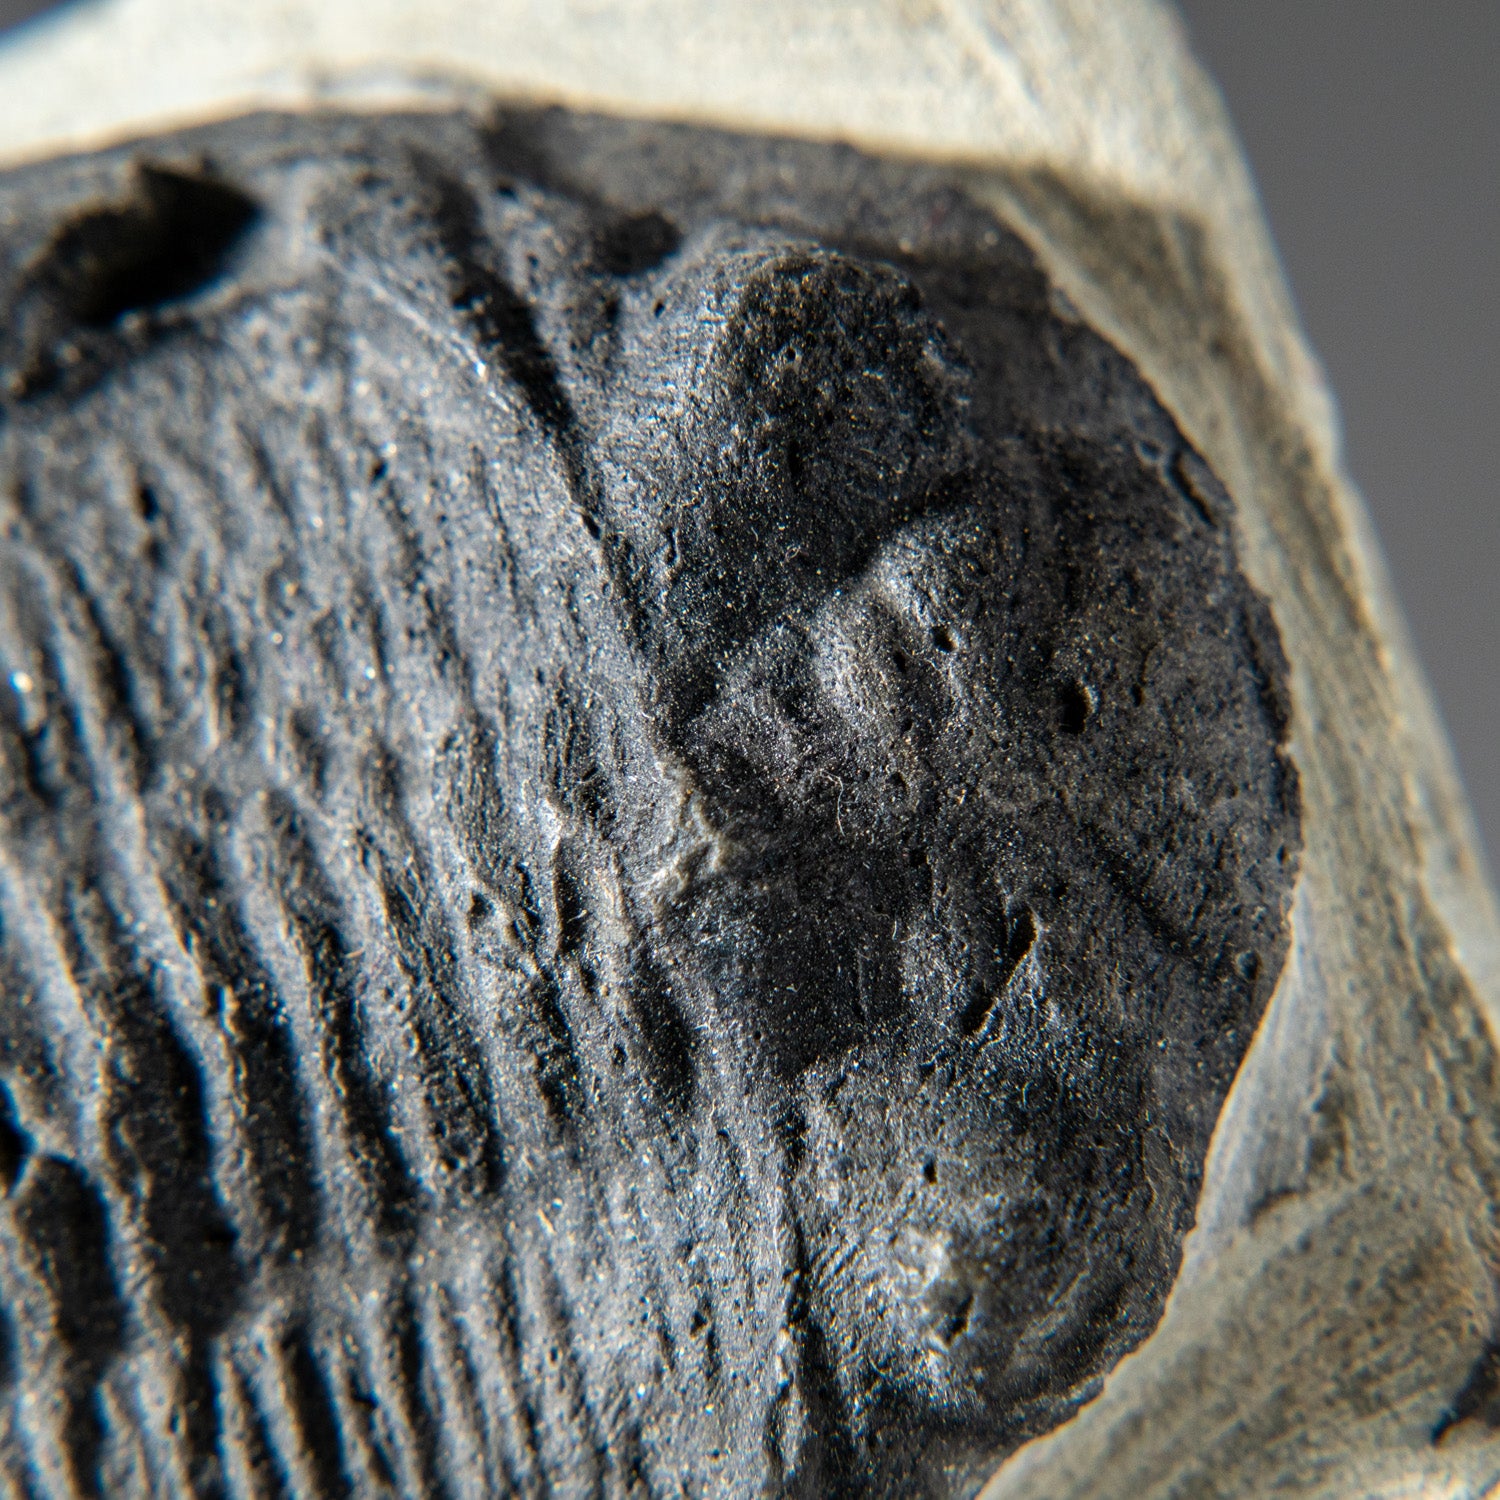 Genuine Single Metacanthina Issoumourensis Trilobite Fossil in Matrix